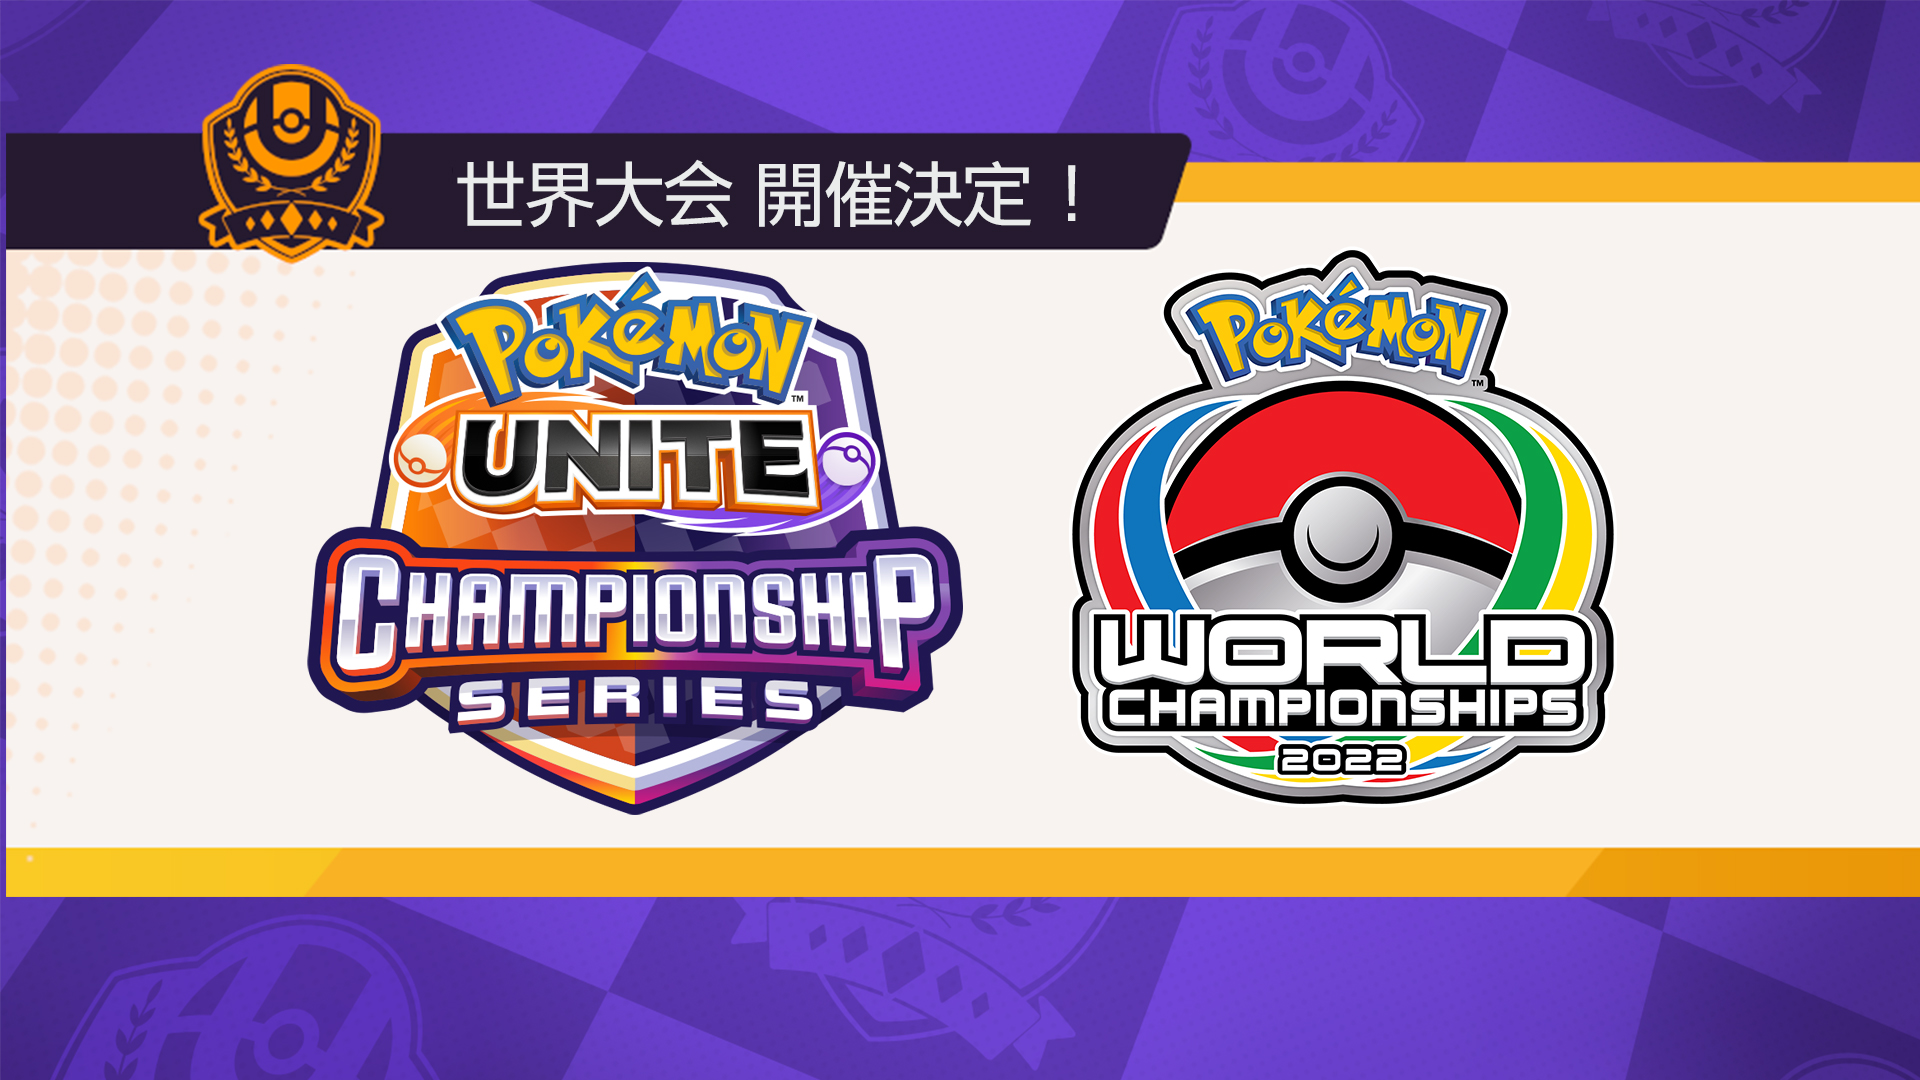 ポケモンユナイト公式 Pokemon Unite が ポケモンワールドチャンピオンシップス22の競技種目に加わることが決定しました 8月の世界大会に向けて 各地域の代表を決める予選が行われます 詳細は後日発表します お楽しみに ポケモンユナイト